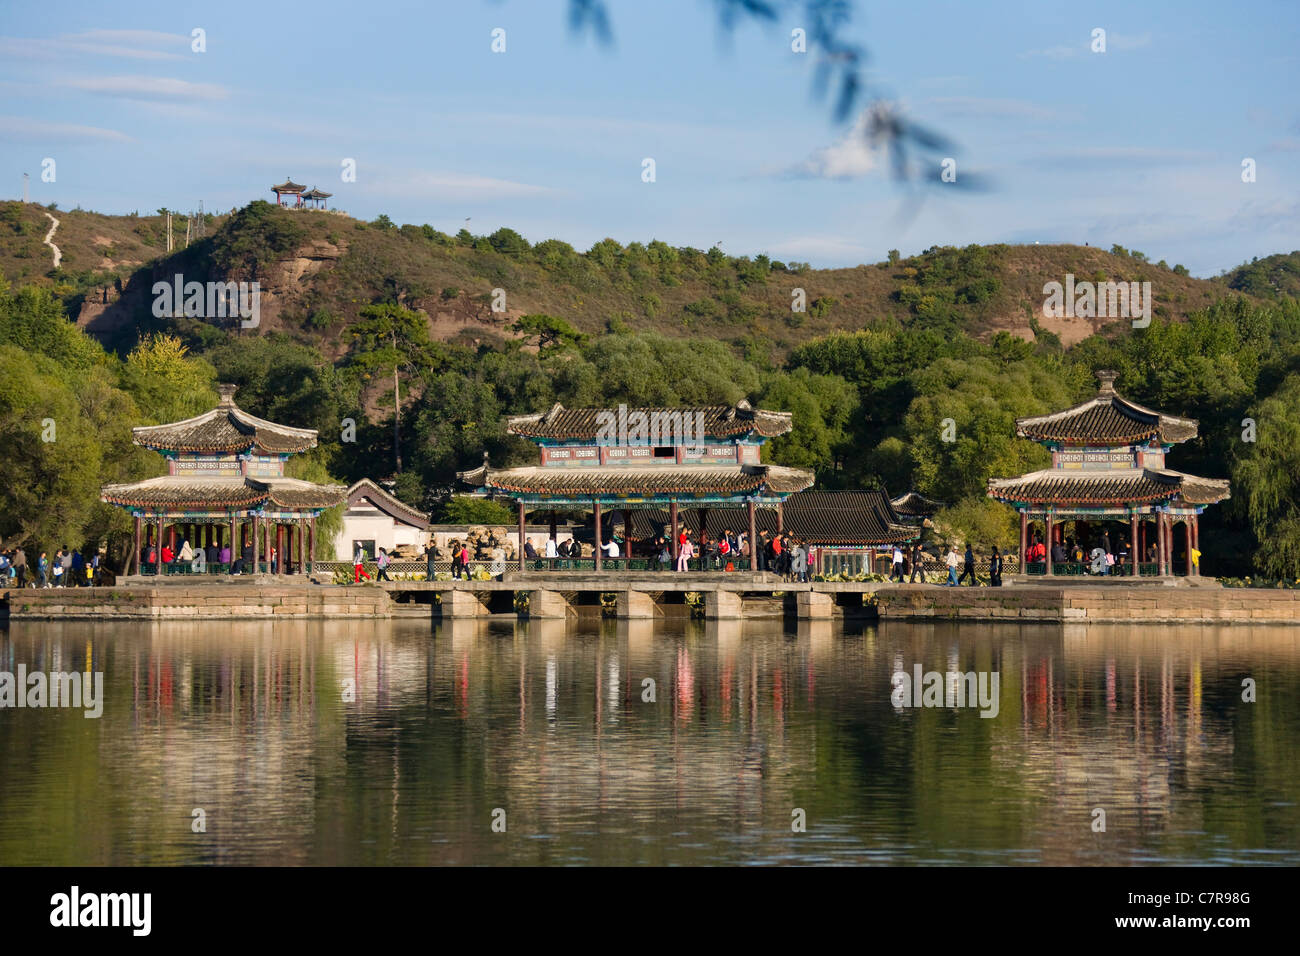 Pavillons le long du lac, Chengde Mountain Resort, Chengde, province de Hebei, Chine Banque D'Images